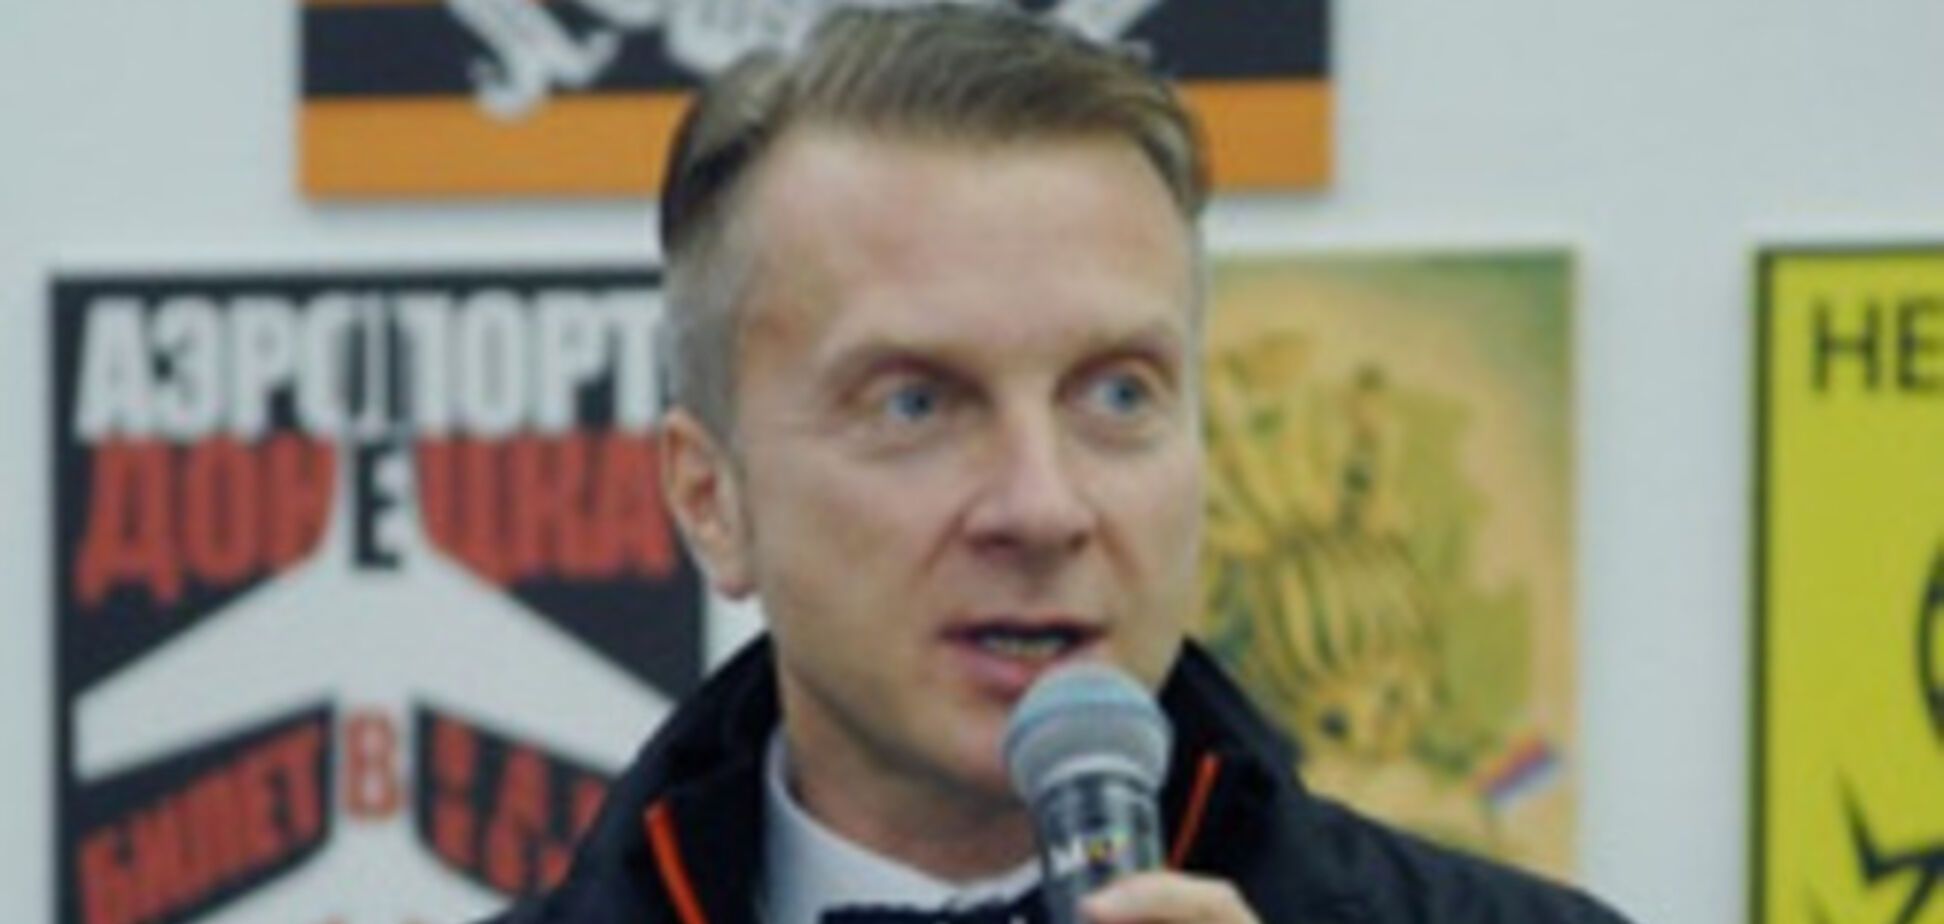 Преследуемый за призыв 'убивать колорадов' художник из Перми попросил защиты у Украины